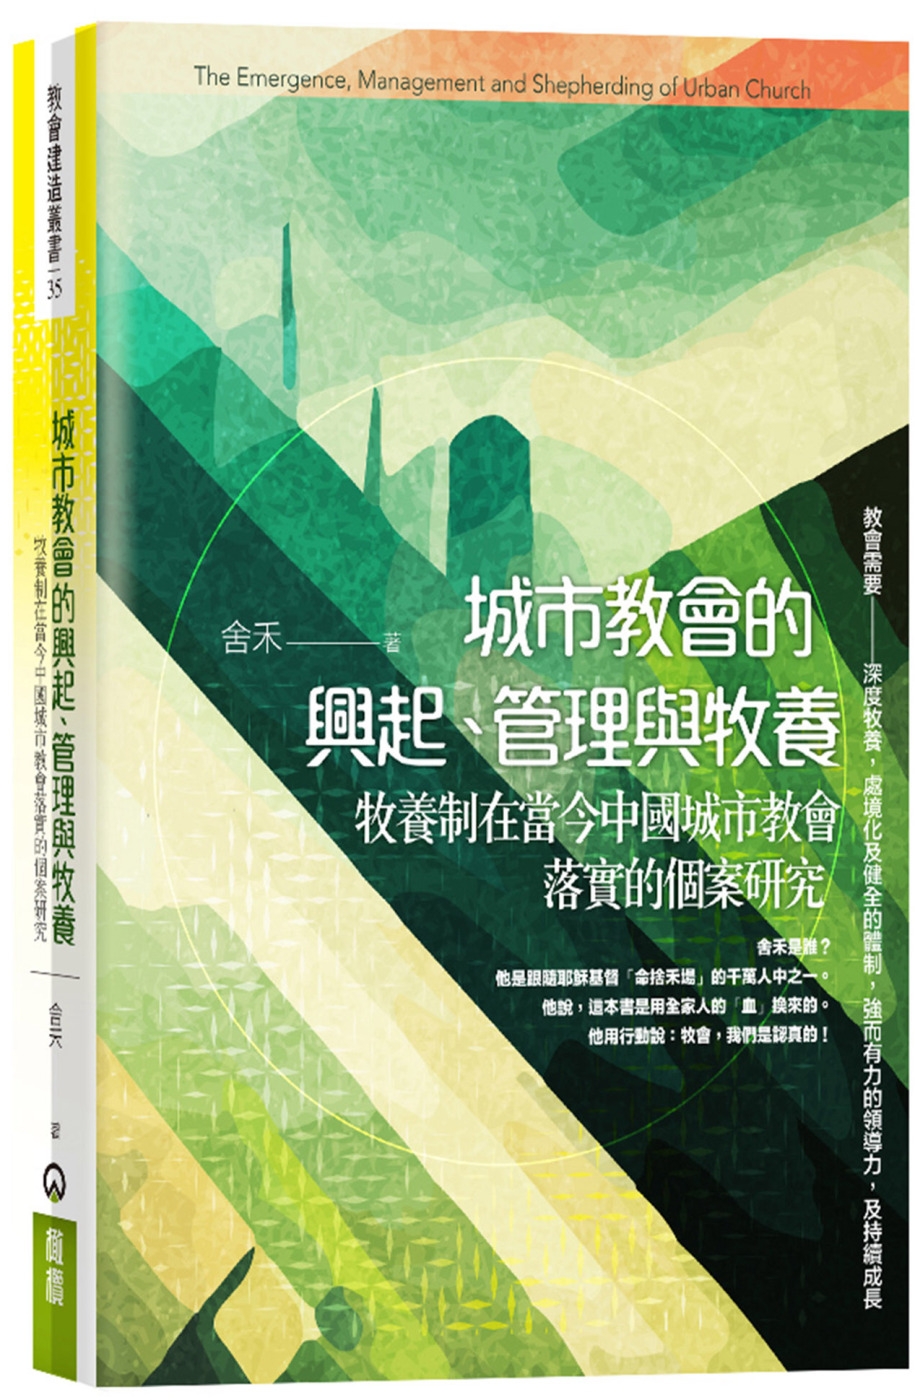 城市教會的興起、管理與牧養：牧養制在當今中國城市教會落實的個案研究